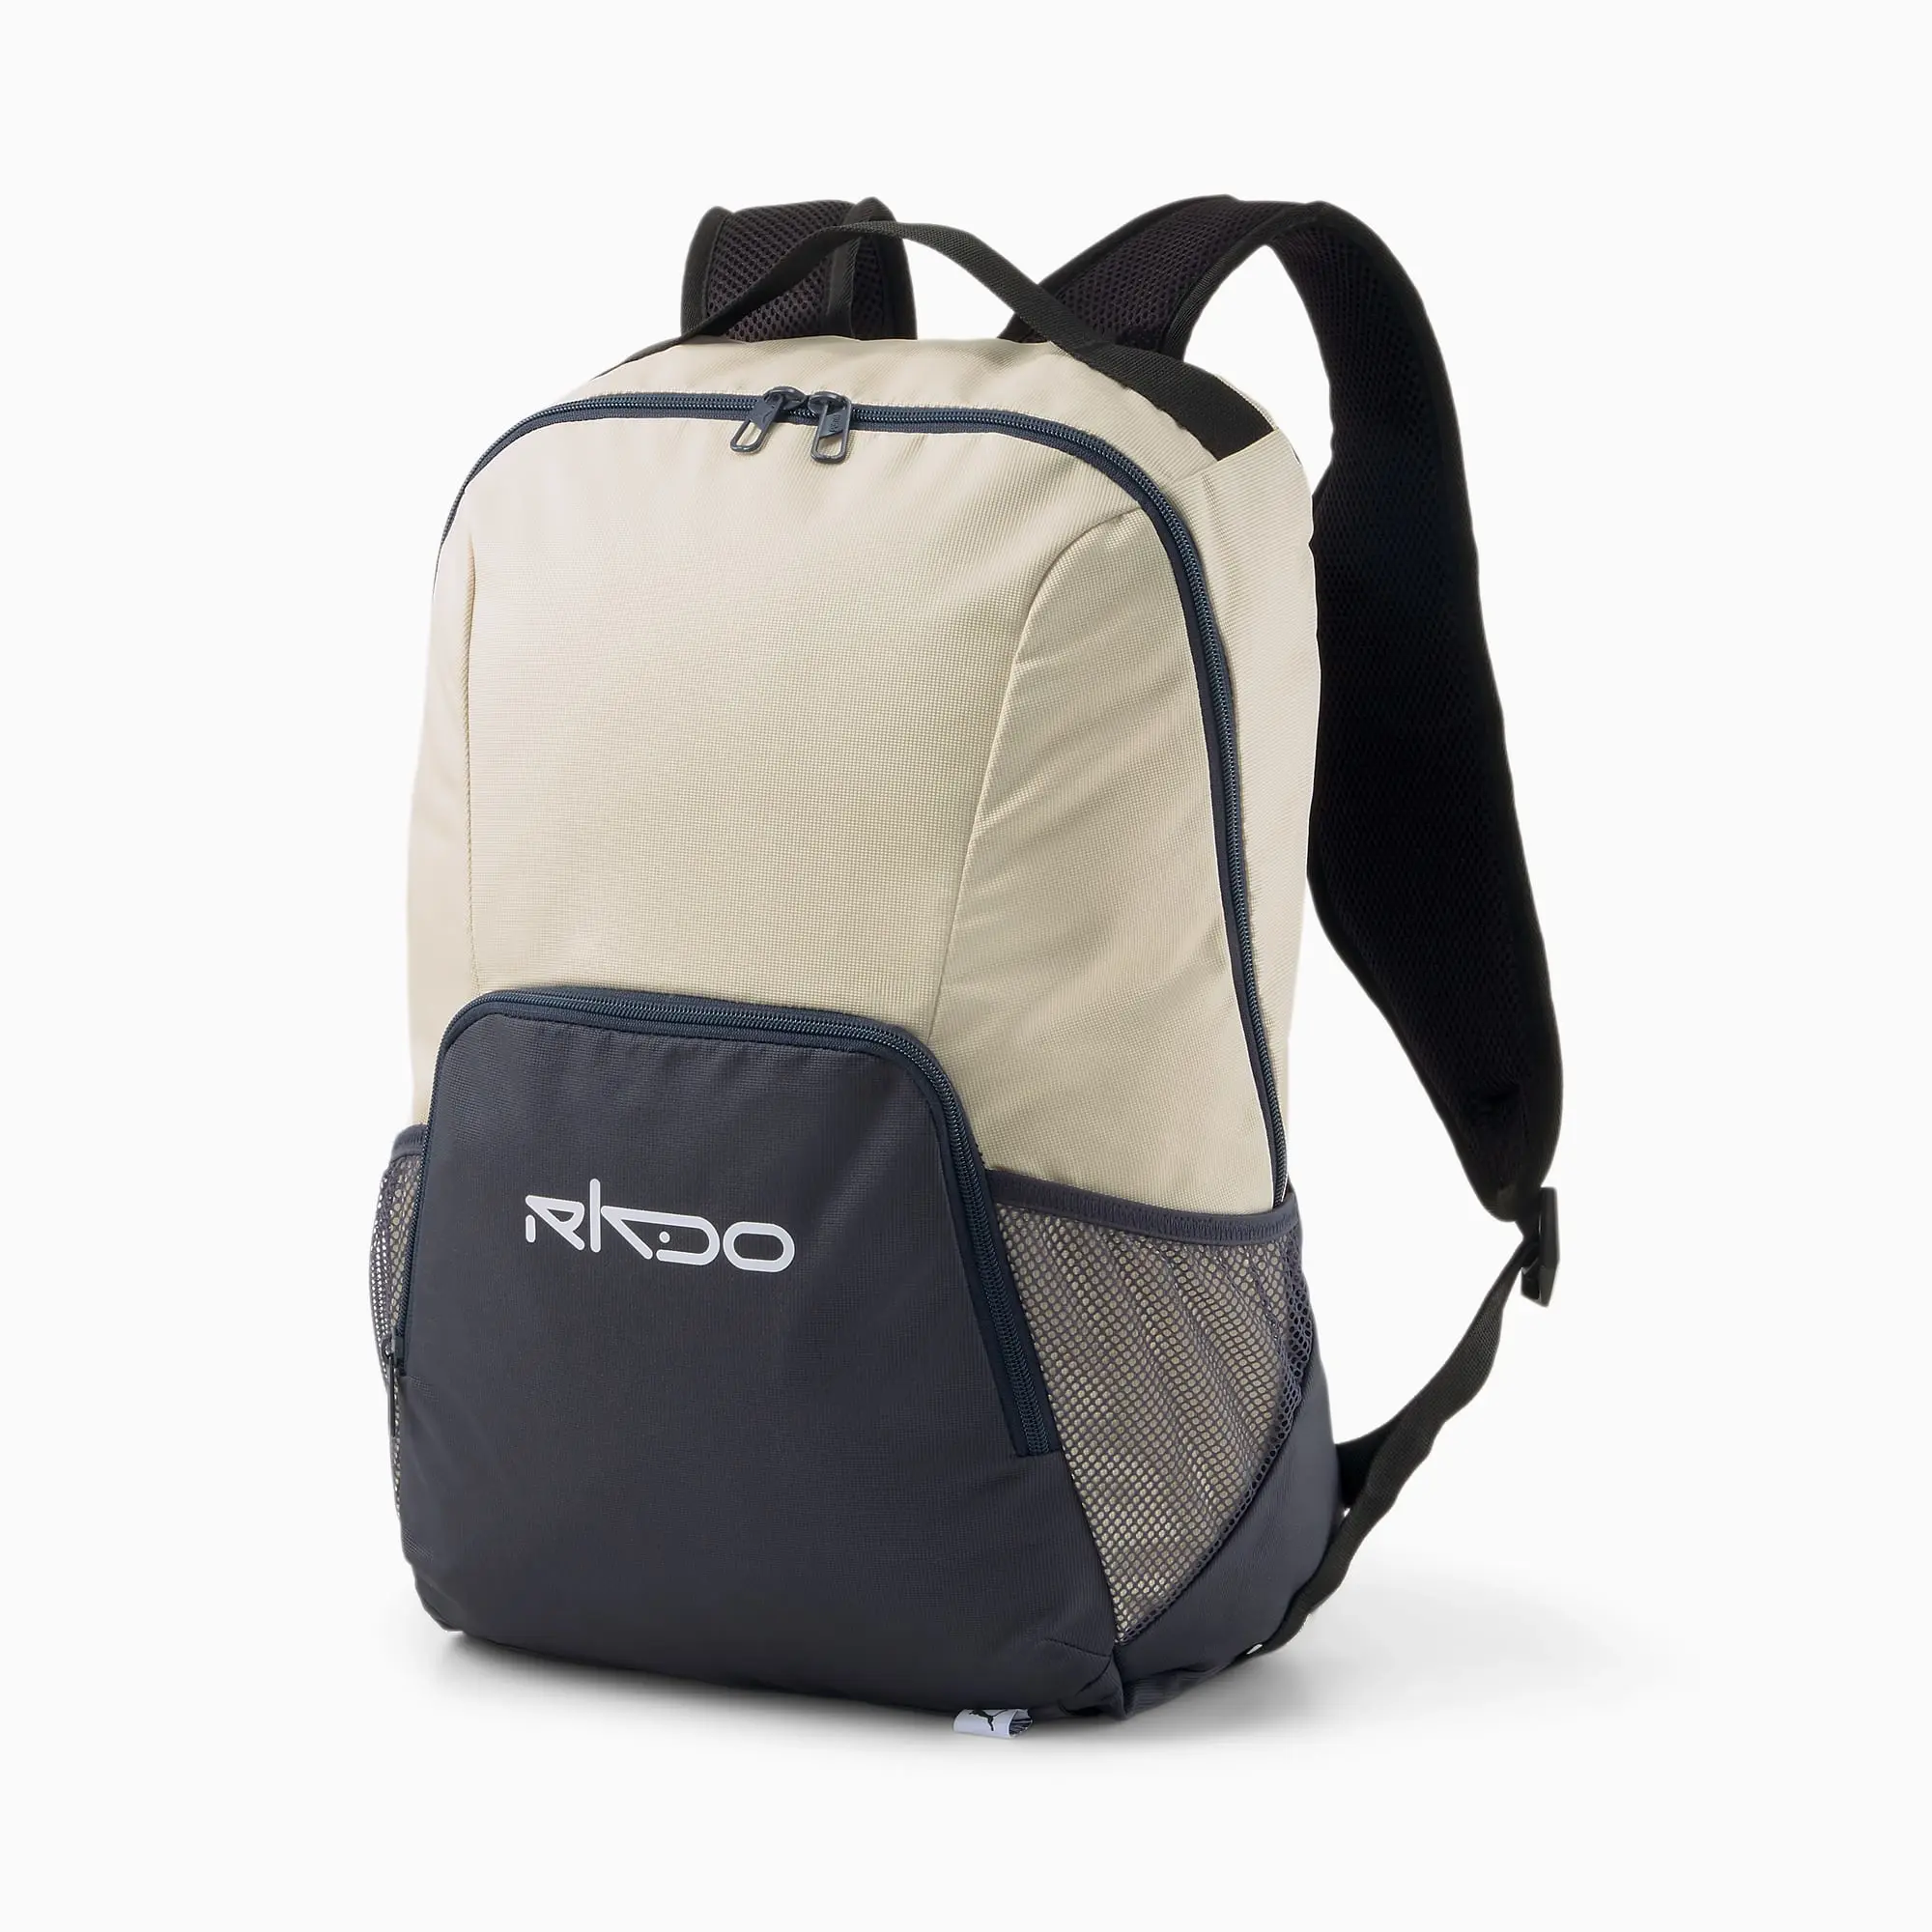 Puma Unisex RKDO Esports Backpack - Beige - One Size